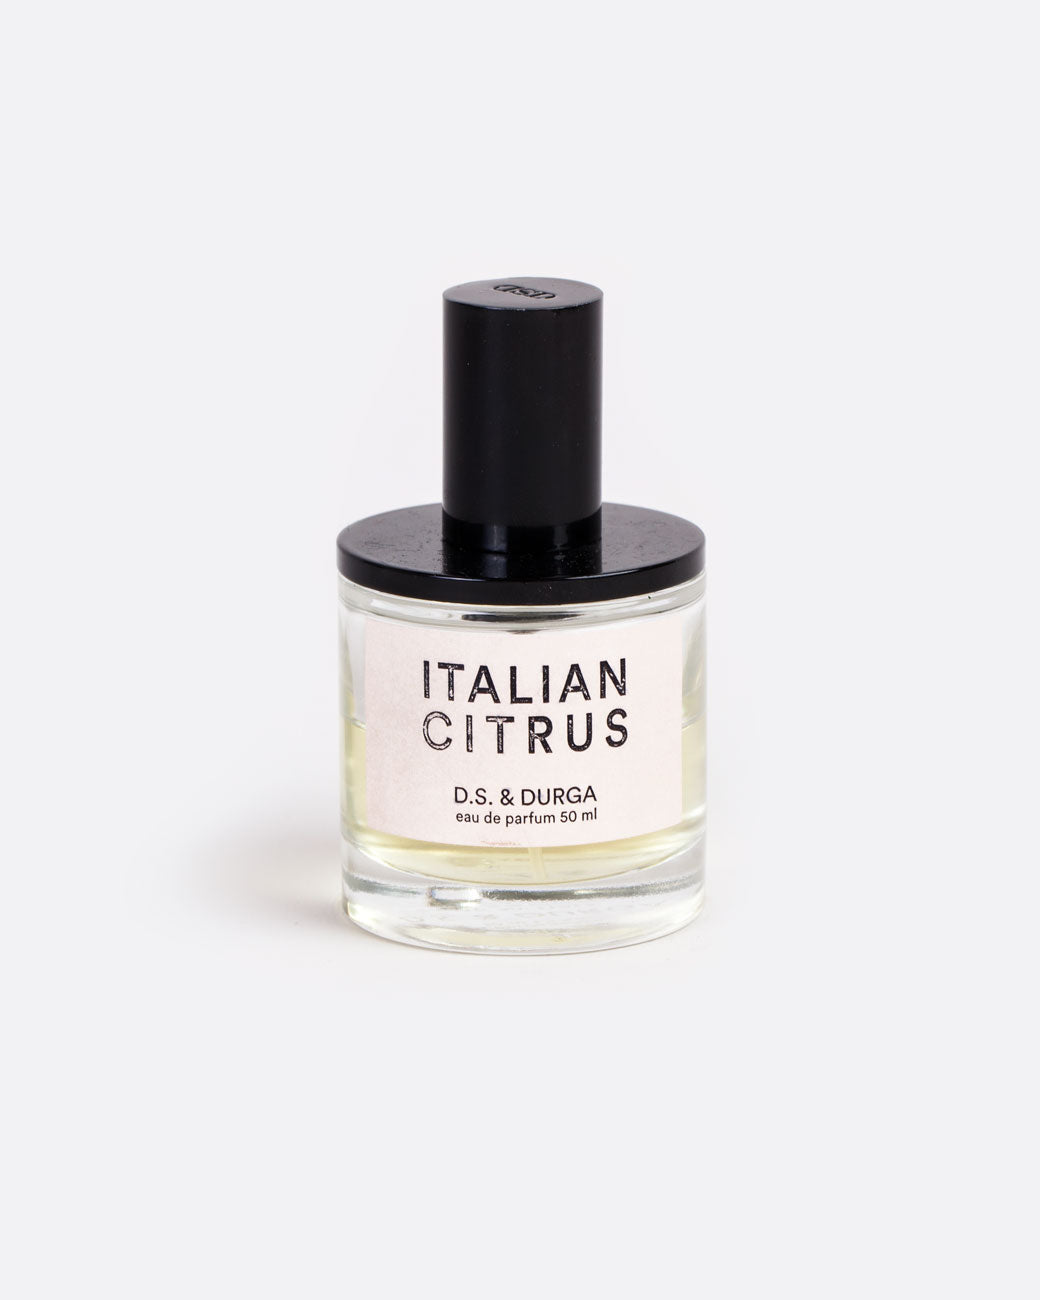 50ML glass bottle of D.S. & Durga Eau De Parfum: Italian Citrus with shiny black spritzer top